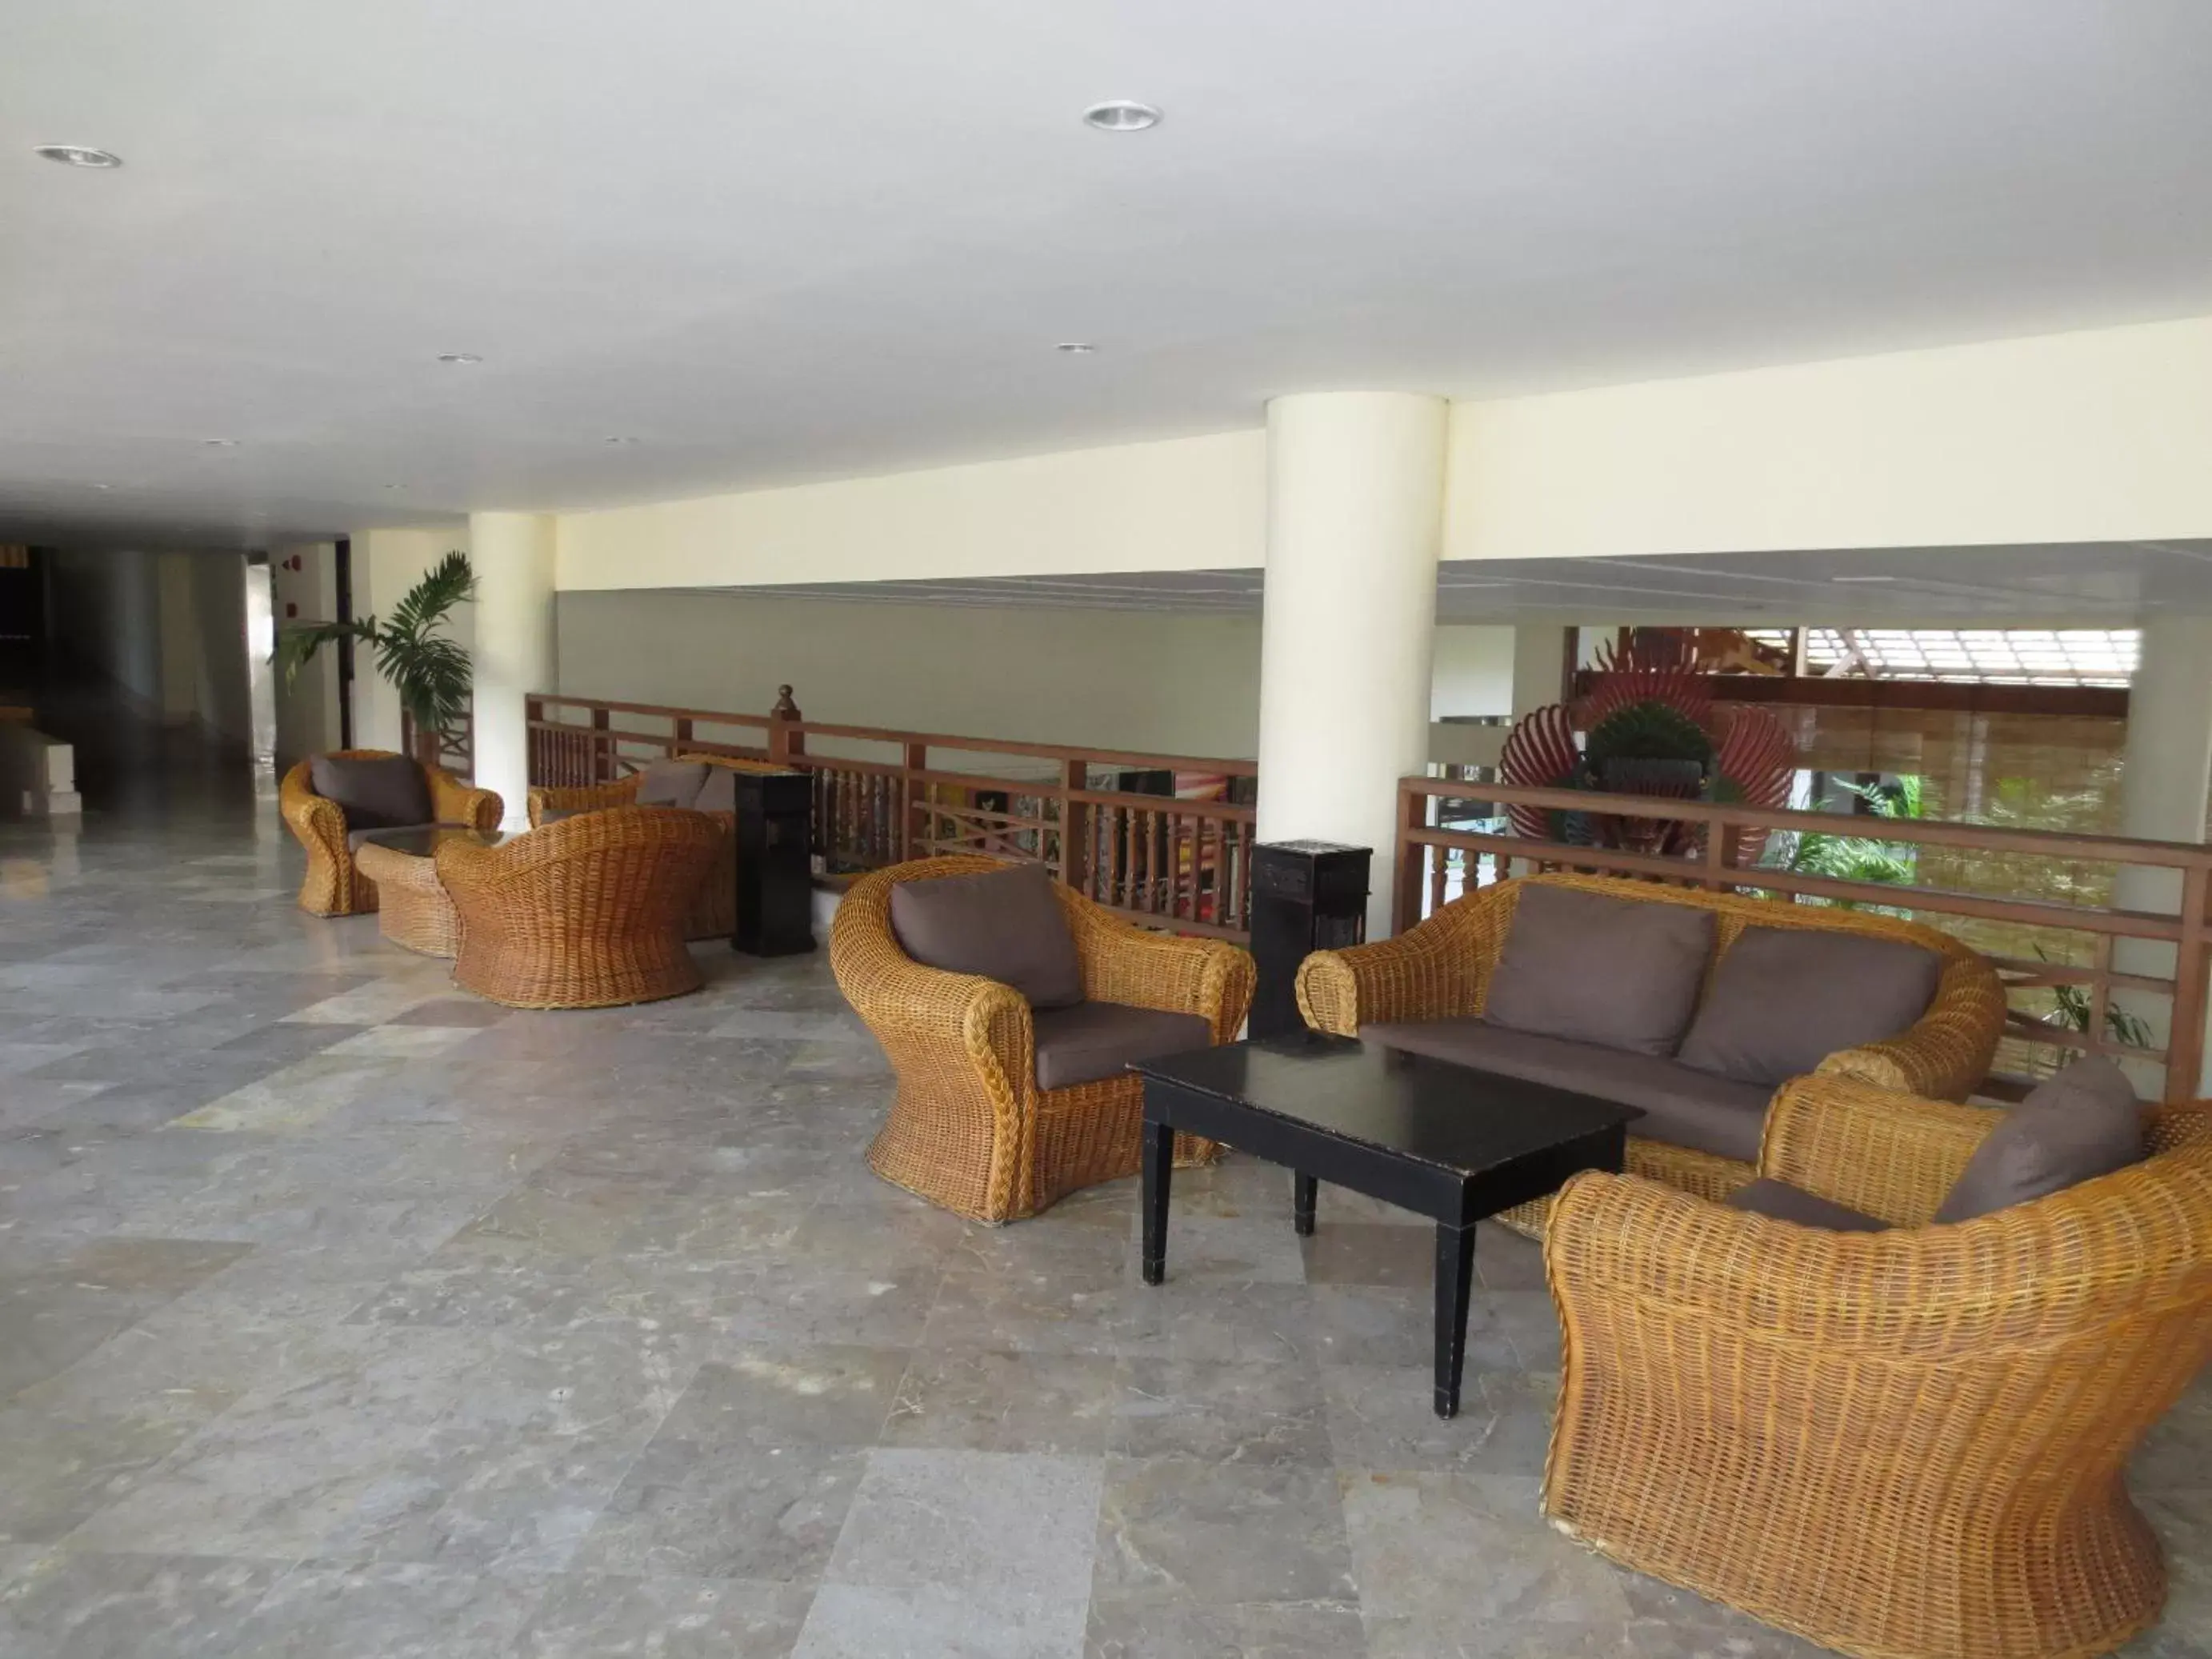 Lobby or reception in Prime Plaza Hotel Sanur – Bali